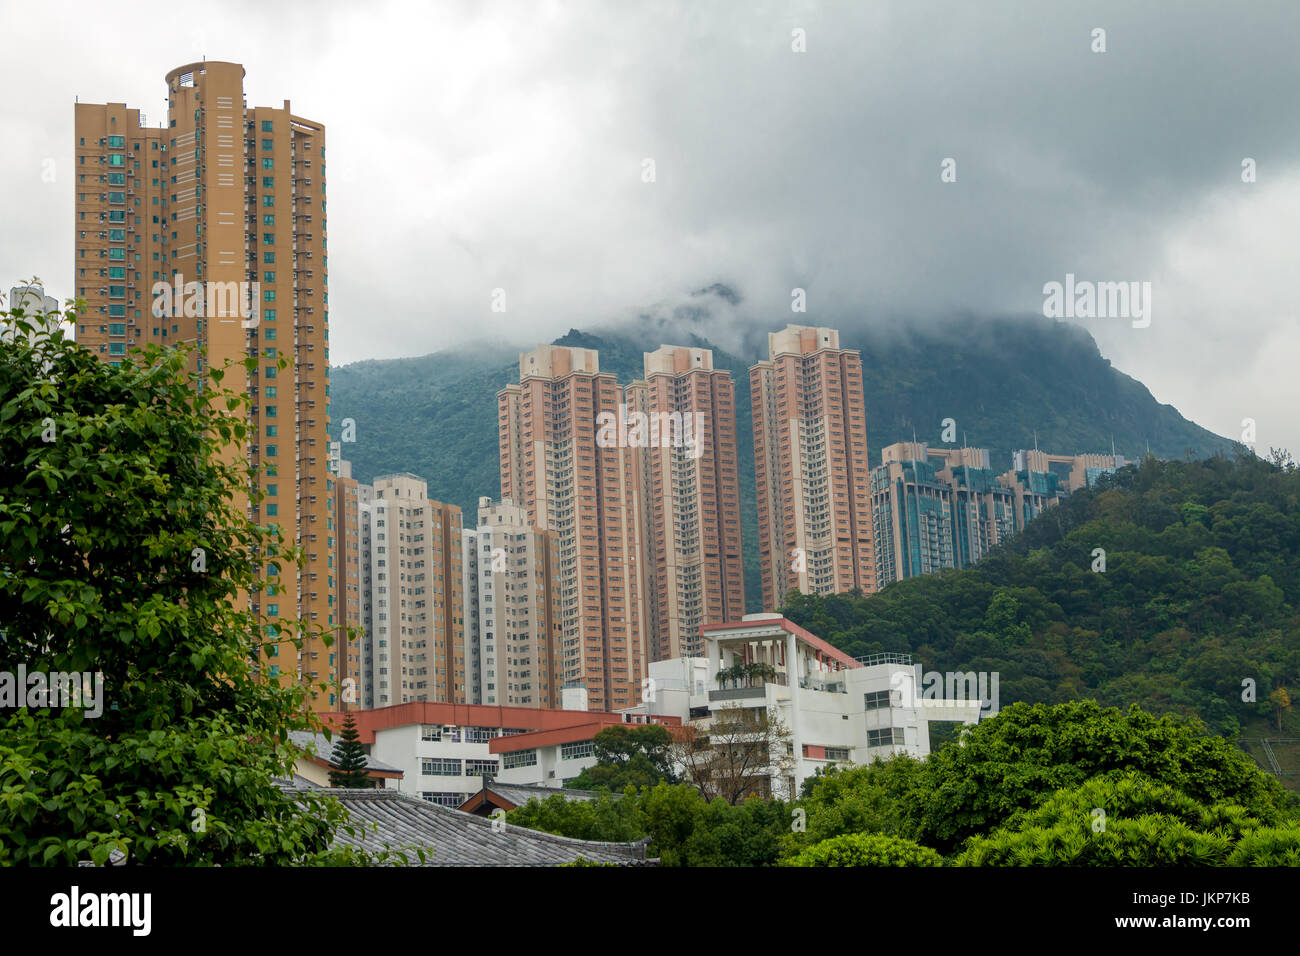 Cina. Un giorno nuvoloso in Hong Kong. Grattacieli residenziali contro lo sfondo delle montagne boscose e nuvole basse Foto Stock